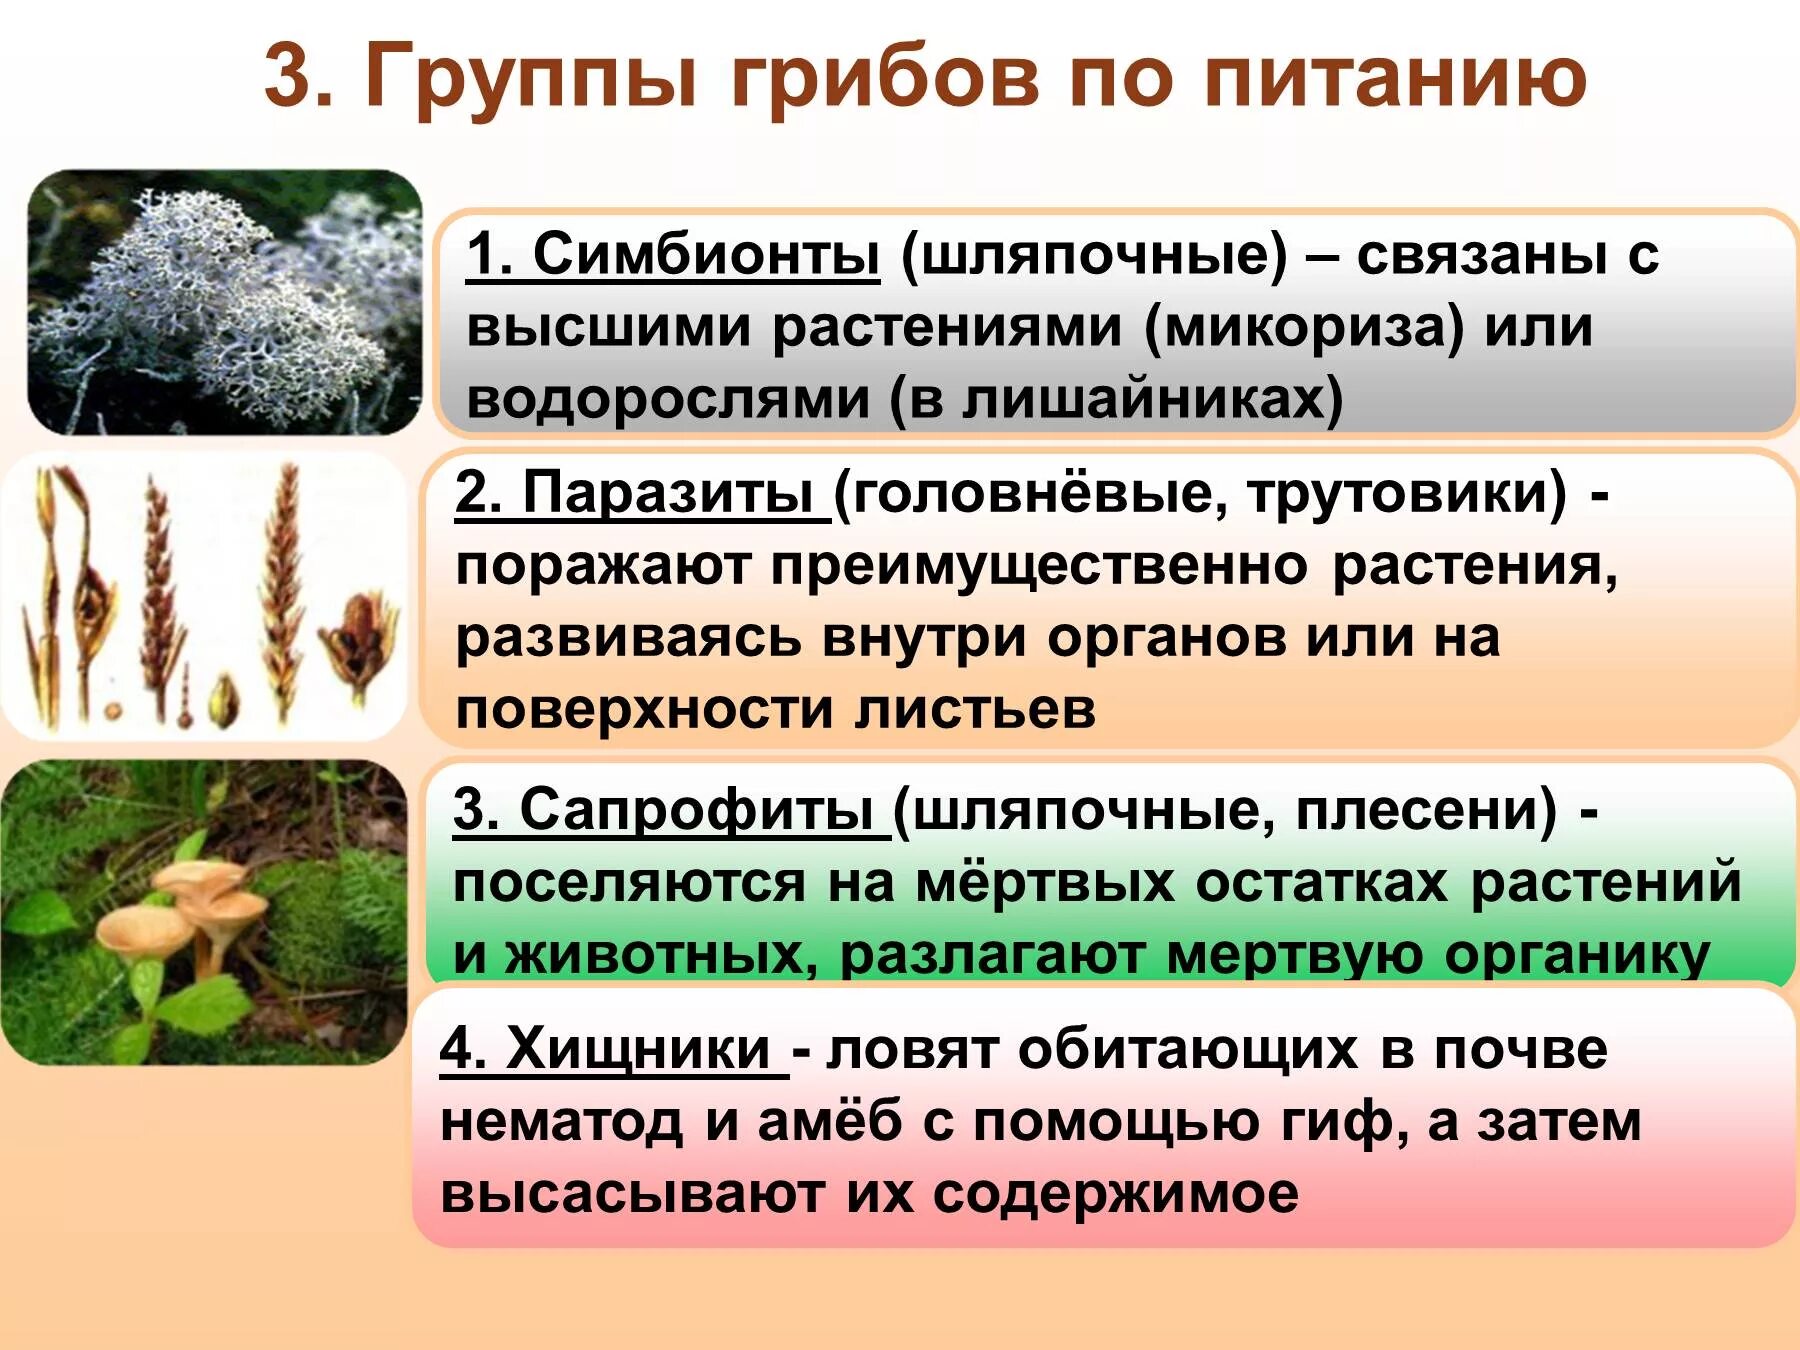 Трутовик симбионт. Питание грибов сапрофиты паразиты симбионты. Группа грибов примеры. Питание грибов 5 класс биология. Биология 6 класс грибы по способу питания.